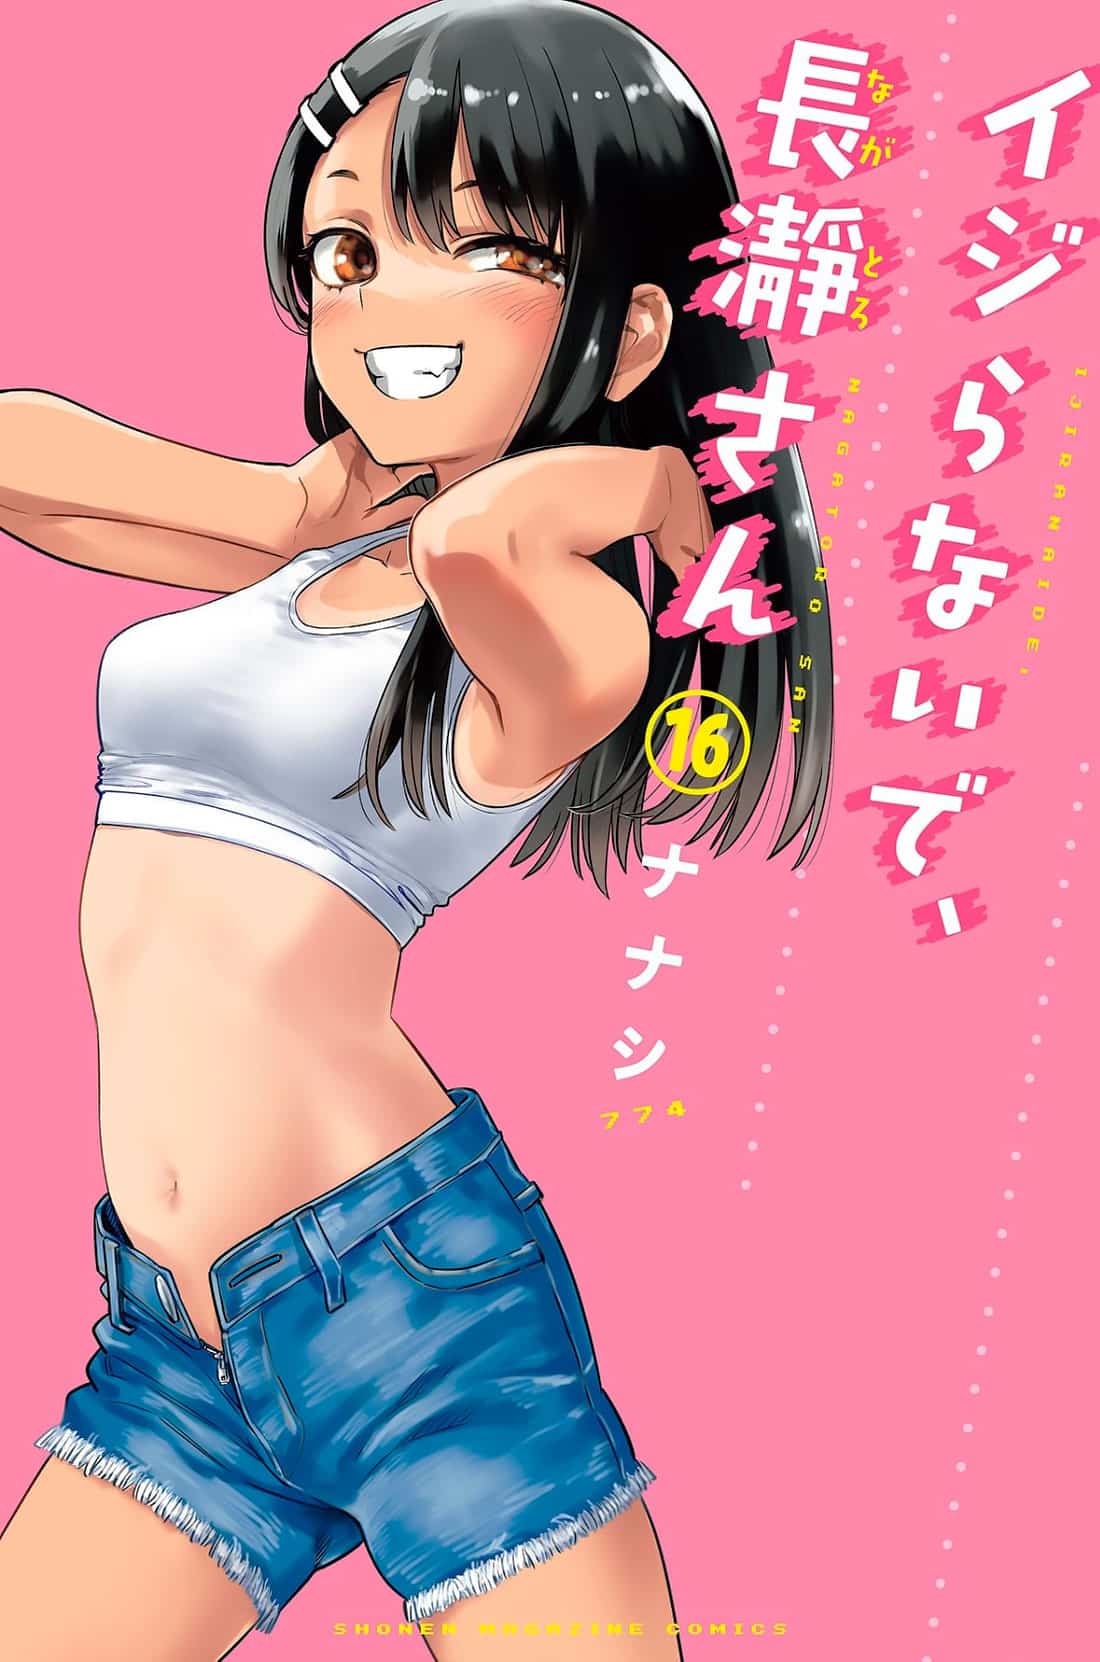 Ijiranaide Nagatoro San Manga Vol 16